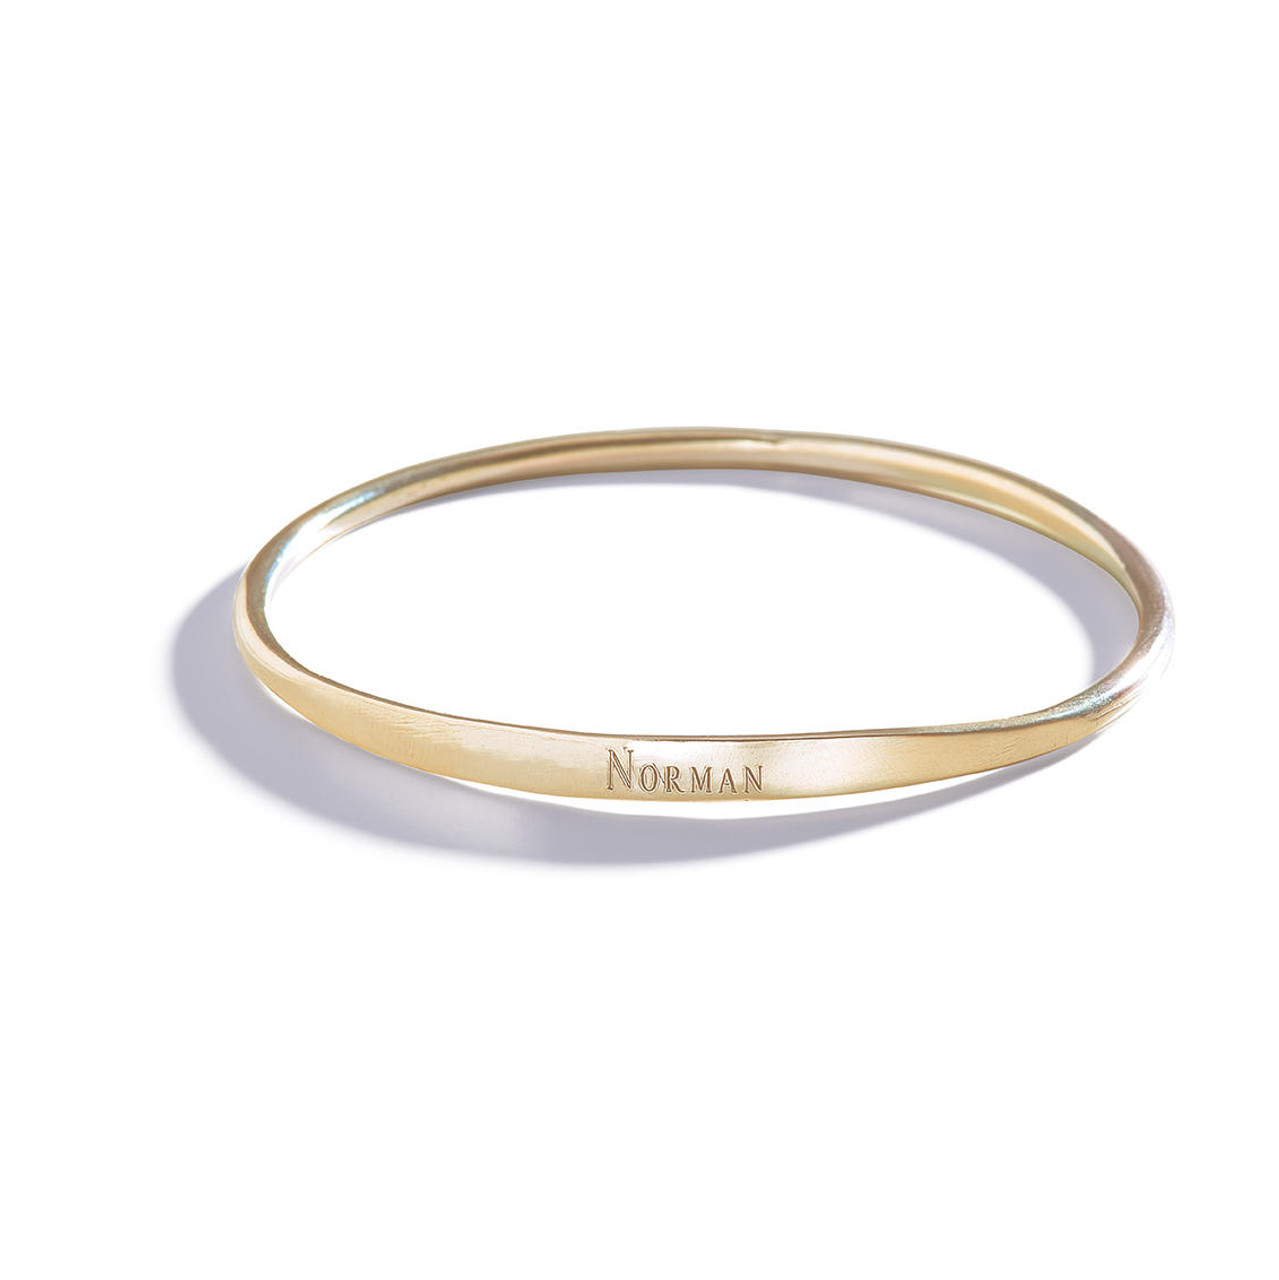 Genuine Real 18K Saudi Gold Bracelet Rope Design 7.5 inches 2.7 grams | eBay